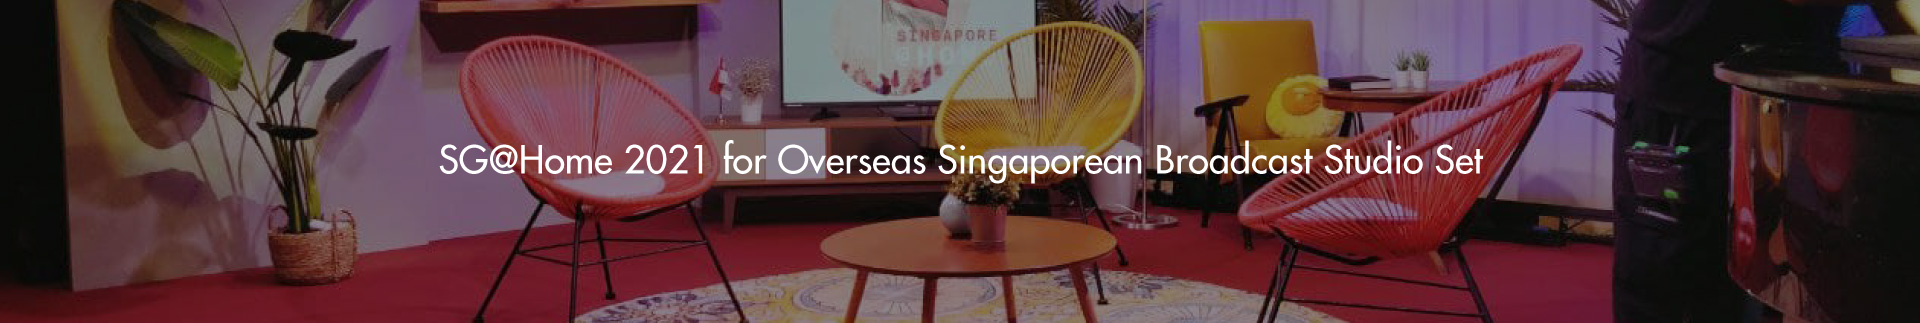 SG@Home 2021 for Overseas Singaporean Broadcast Studio Set